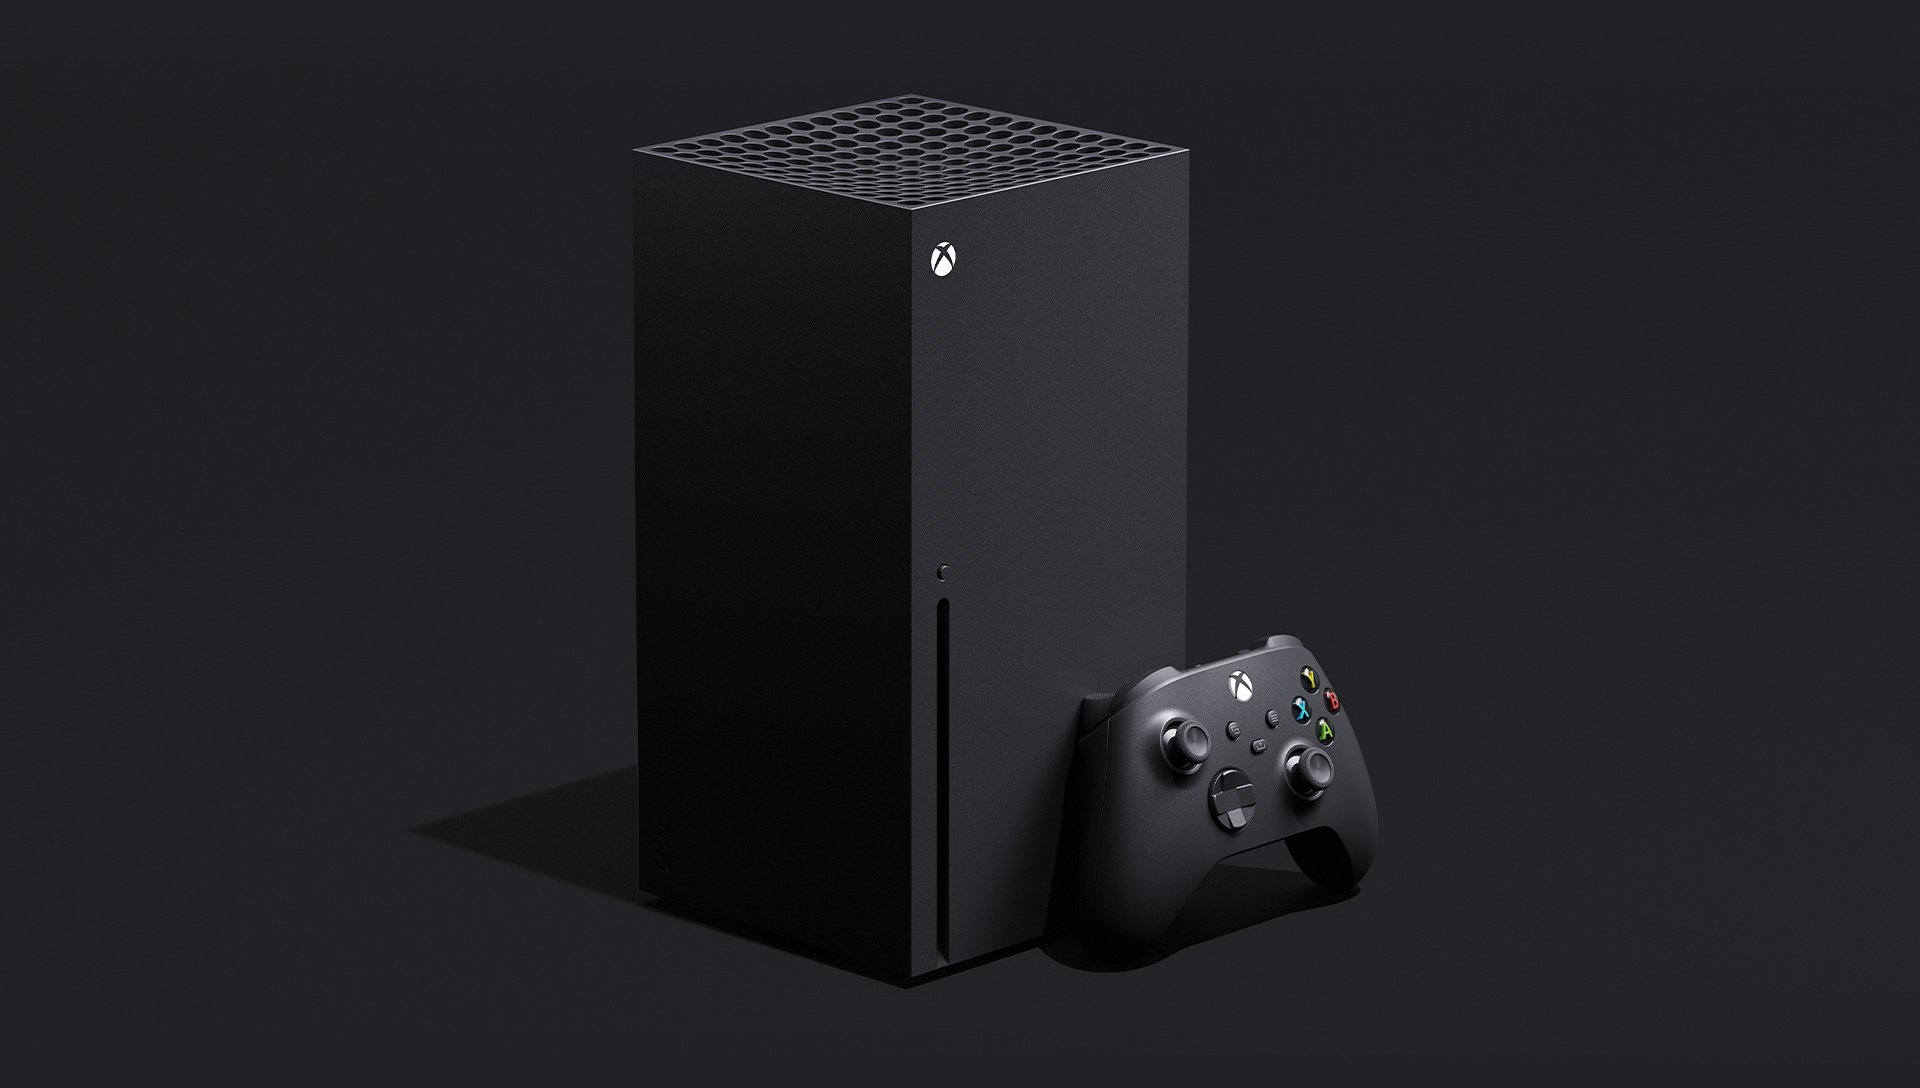 Nowa konsola do gier Xbox Series X od Microsoft wyjdzie w 2020 roku. A co pokaże Sony?